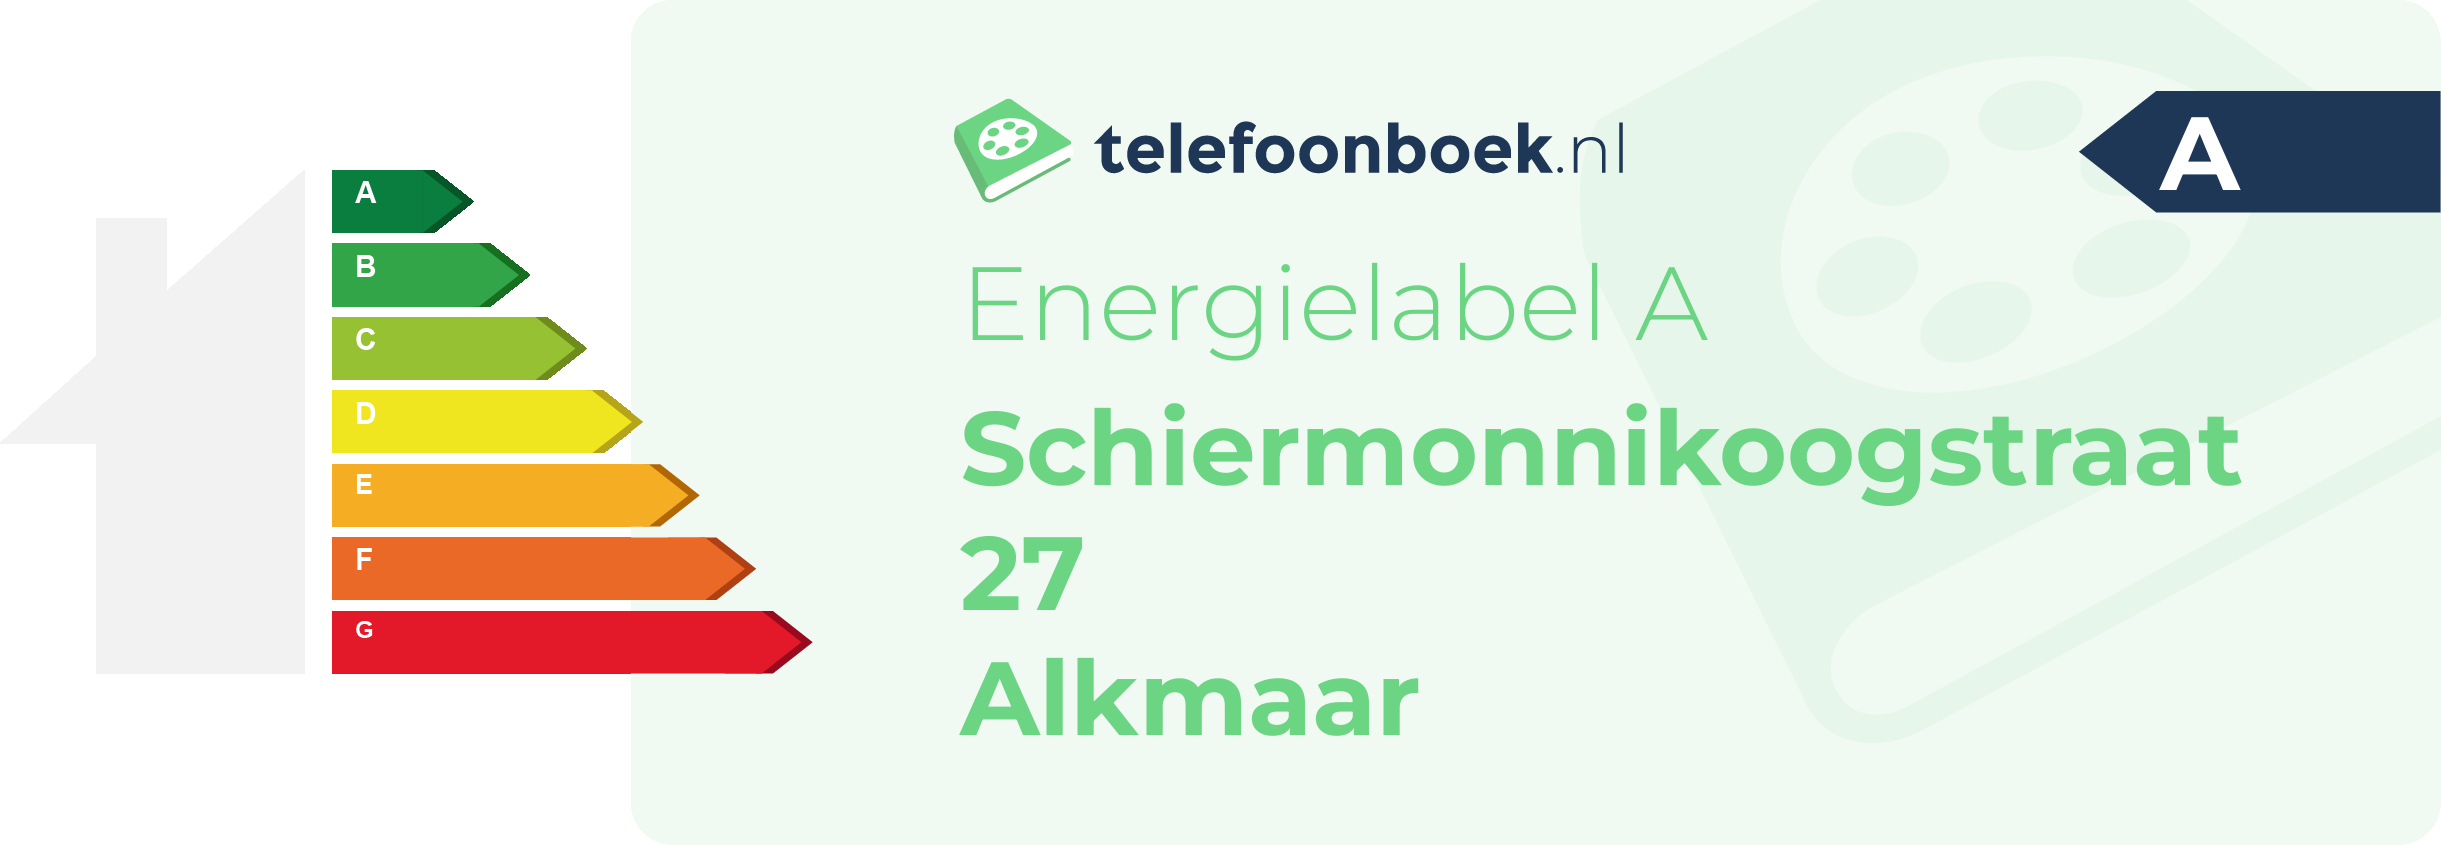 Energielabel Schiermonnikoogstraat 27 Alkmaar